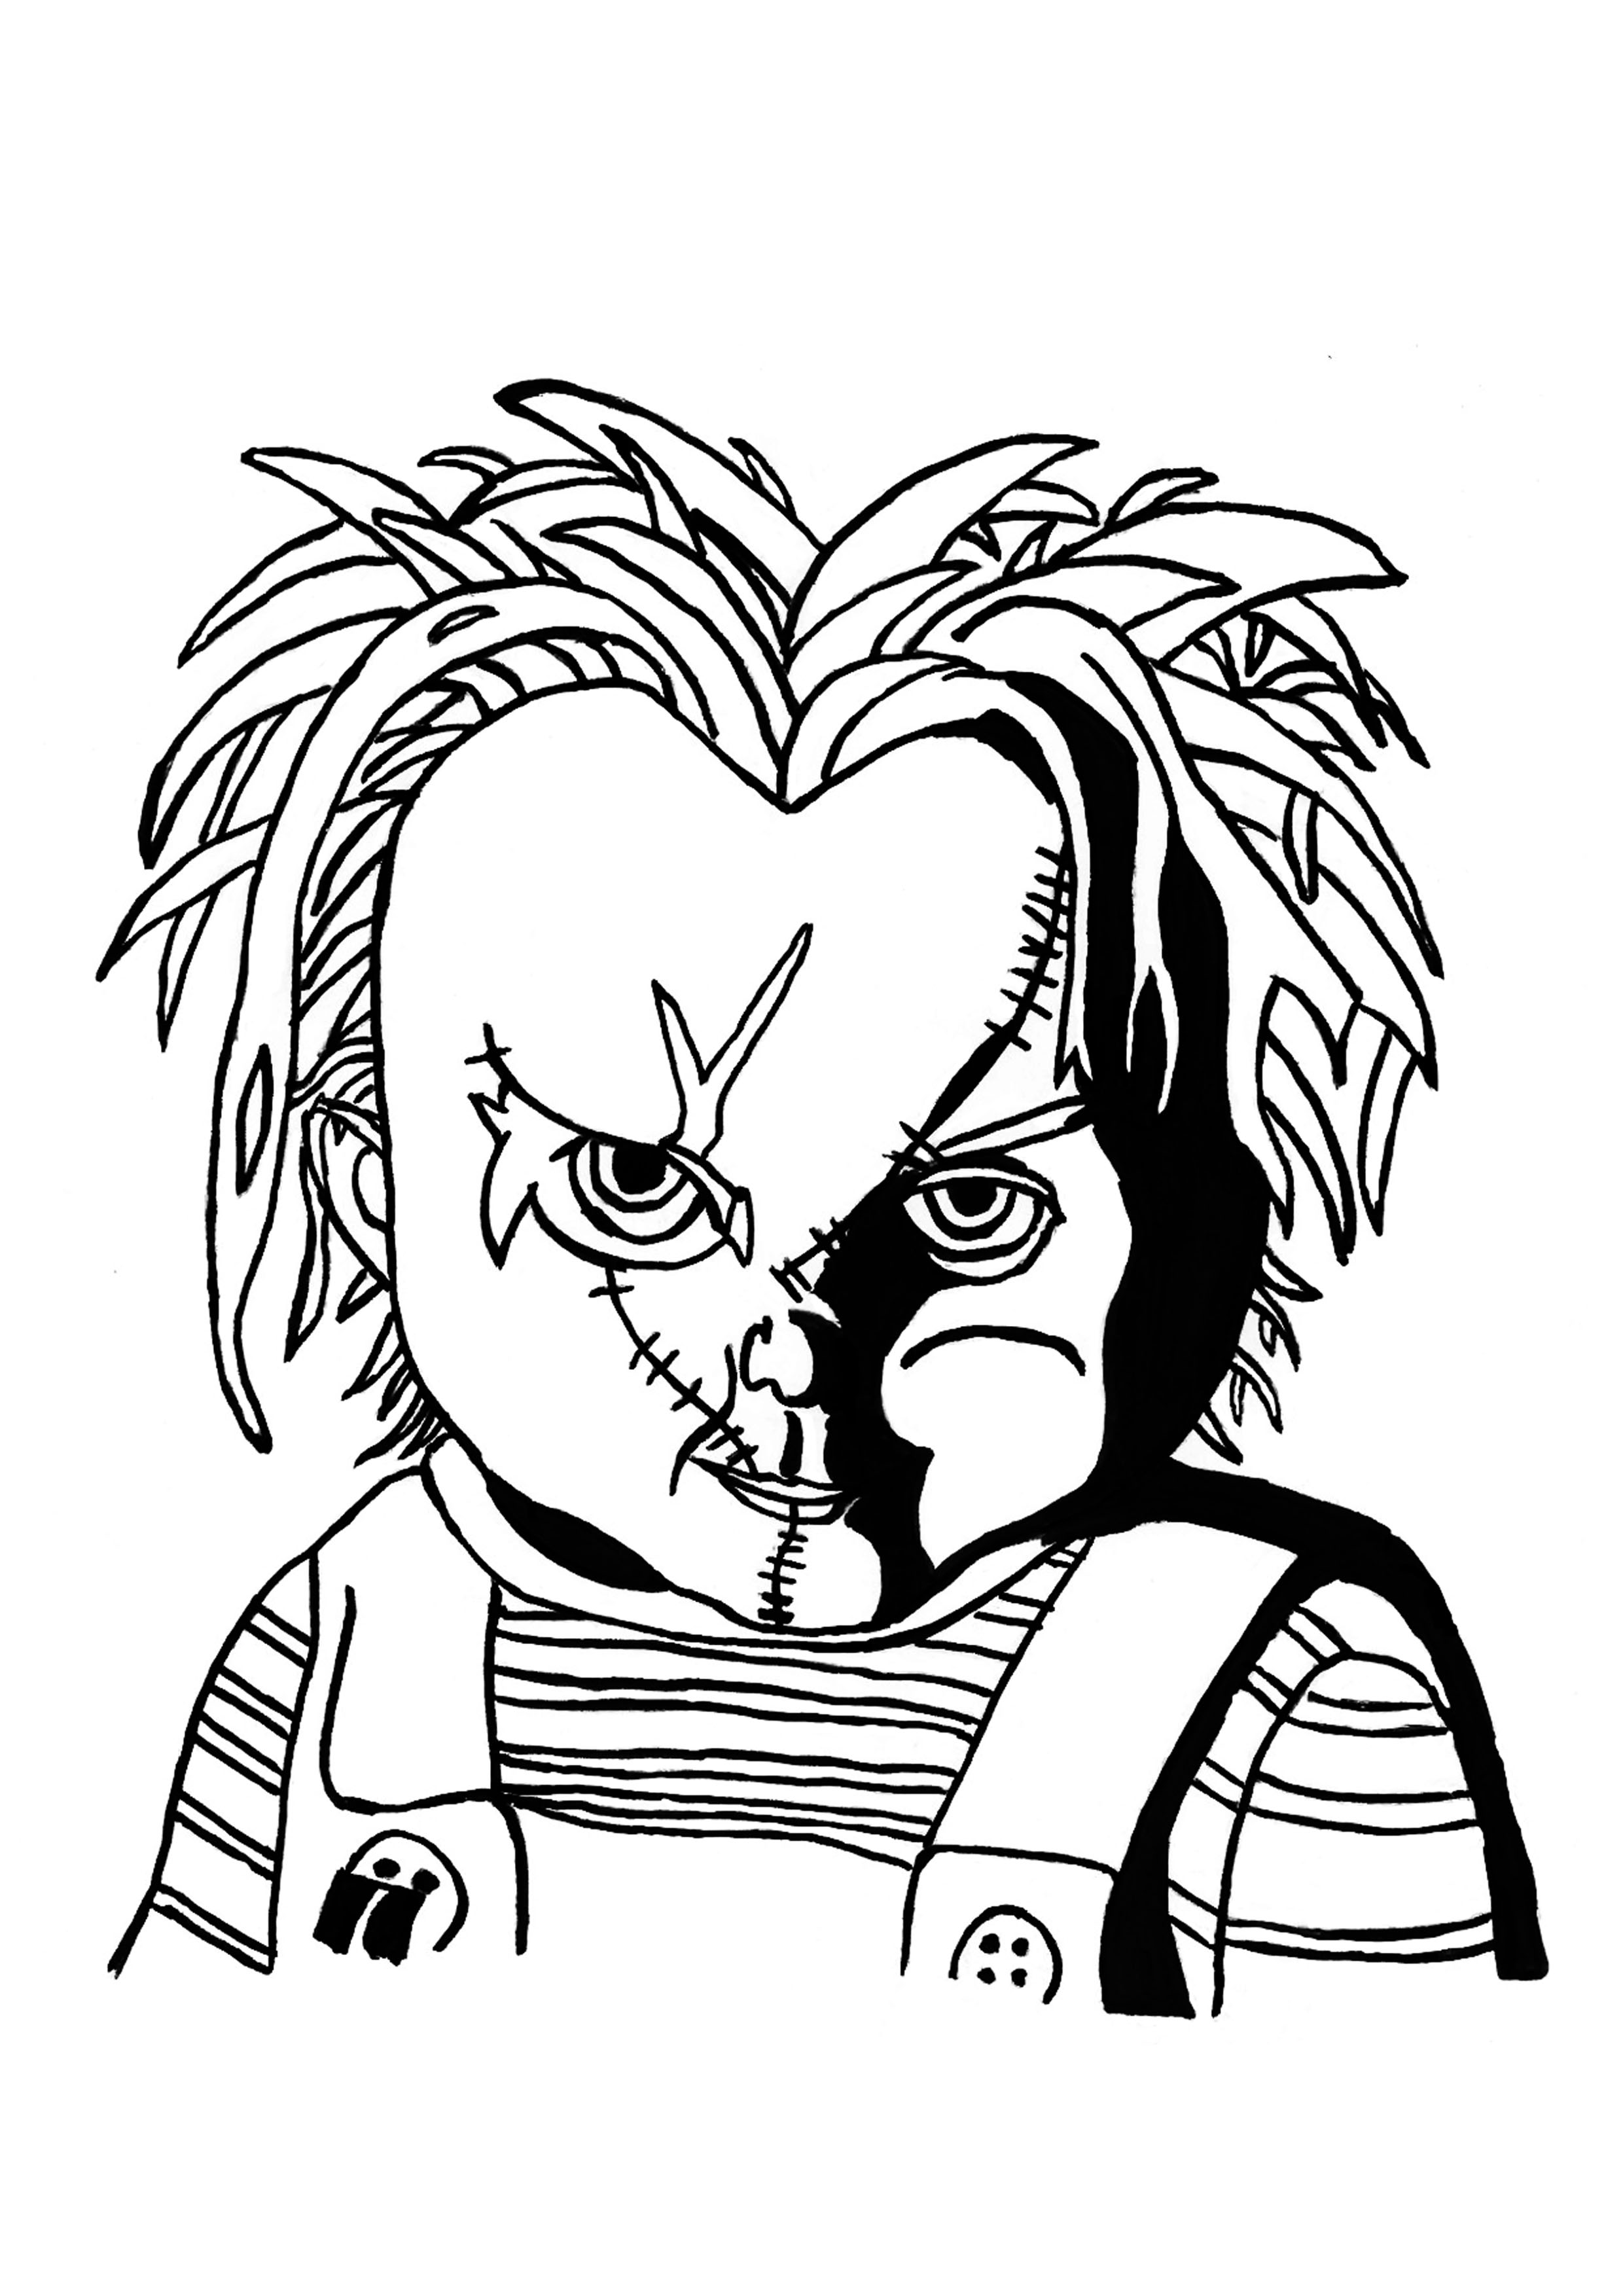 Portrait de l'effrayante poupée Chucky, à colorier pour Halloween